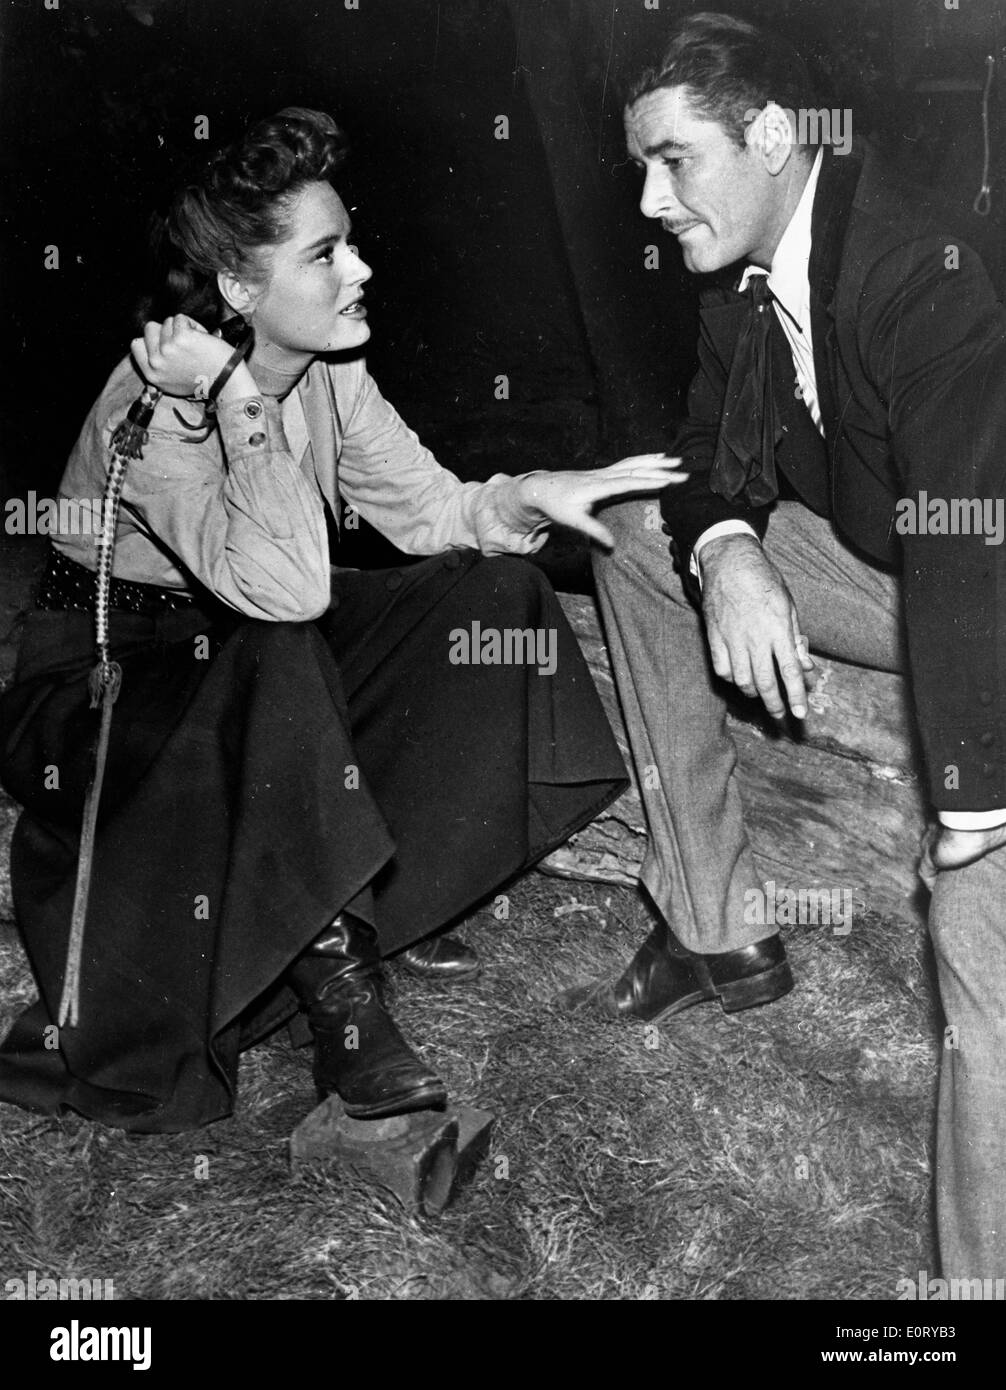 Attore Errol Flynn e co-star in film scena Foto Stock